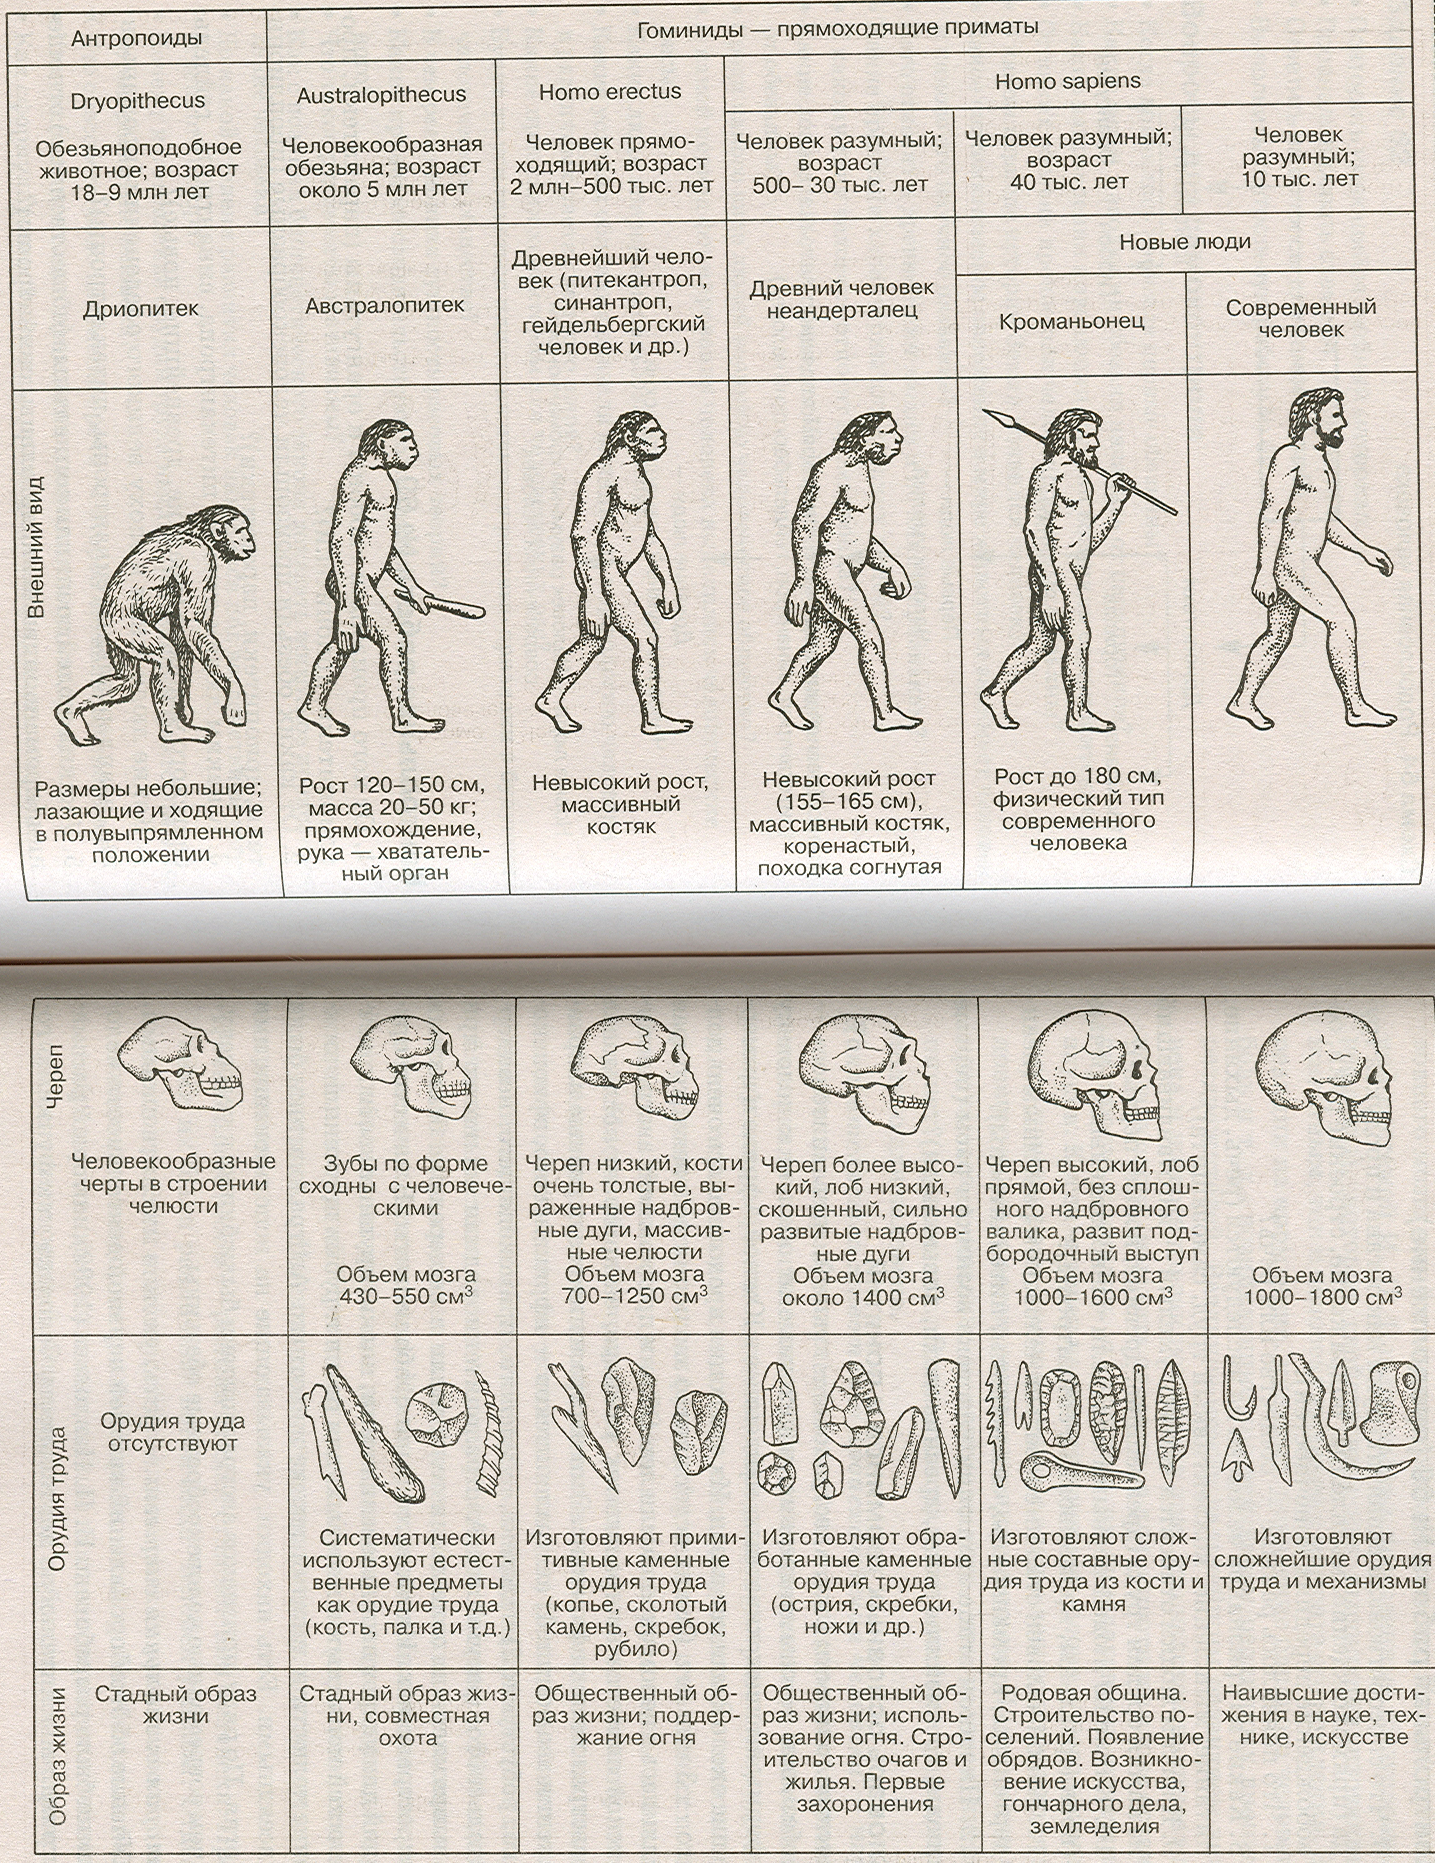 Антропогенез таблица. Этапы развития человека таблица этапы антропогенеза. Этапы эволюции человека таблица дриопитек. Основные этапы эволюции человека схема. Схема происхождение человека основные этапы антропогенеза.